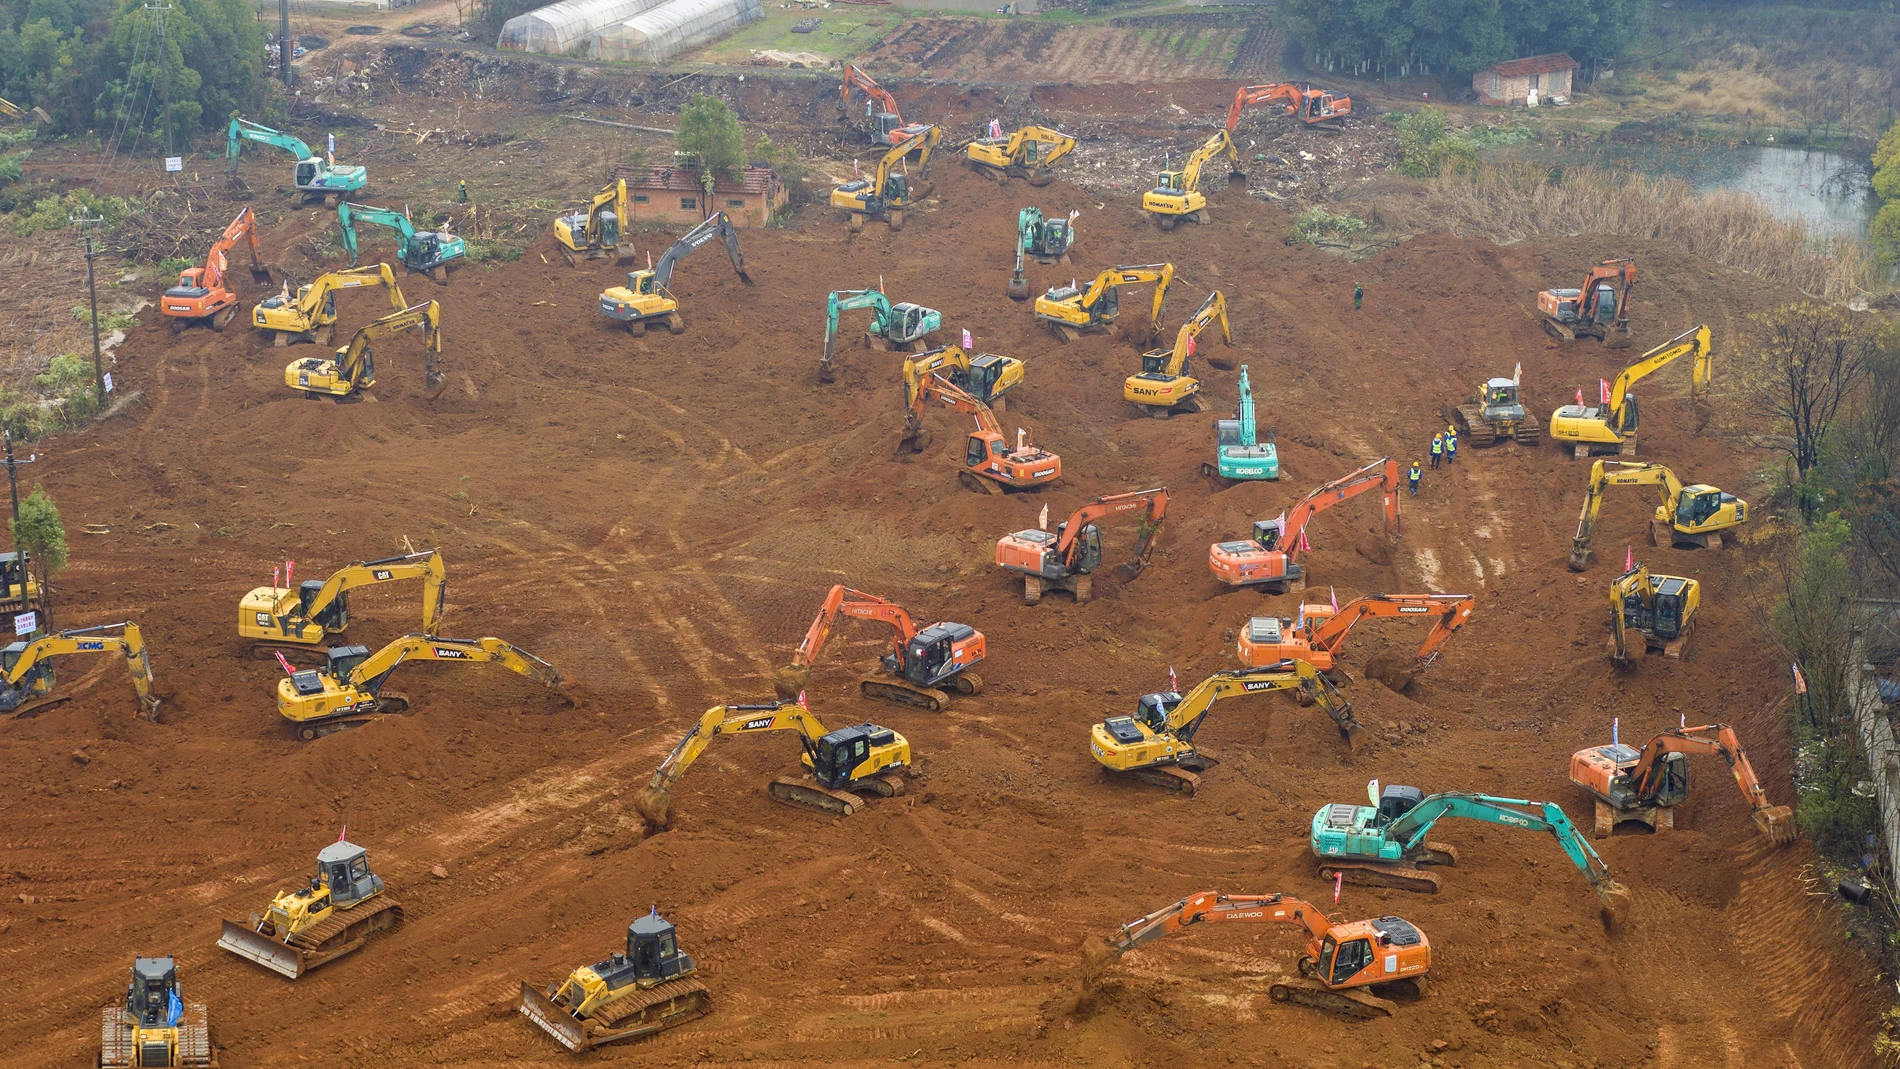 Decenas de excavadoras trabajan sin descanso para la construcción del nuevo hospital. (Chinatopix via AP)